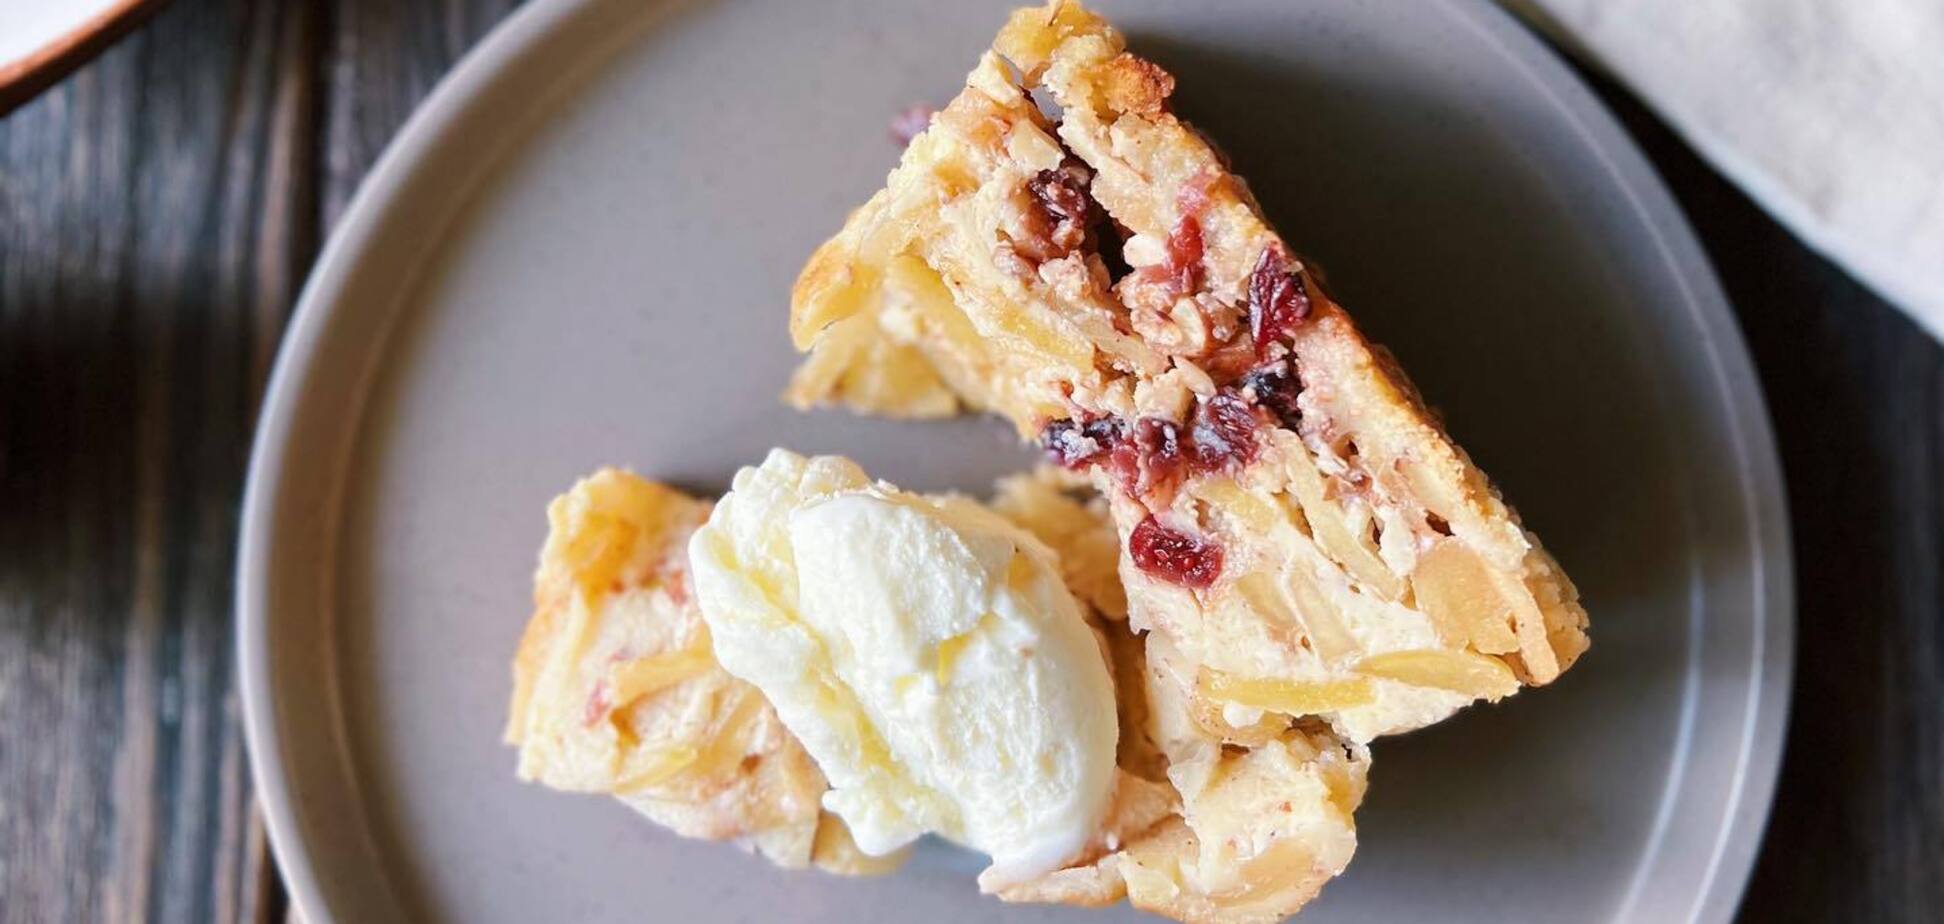 Вишуканий яблучний пиріг з крамблом: багато начинки та мало борошна